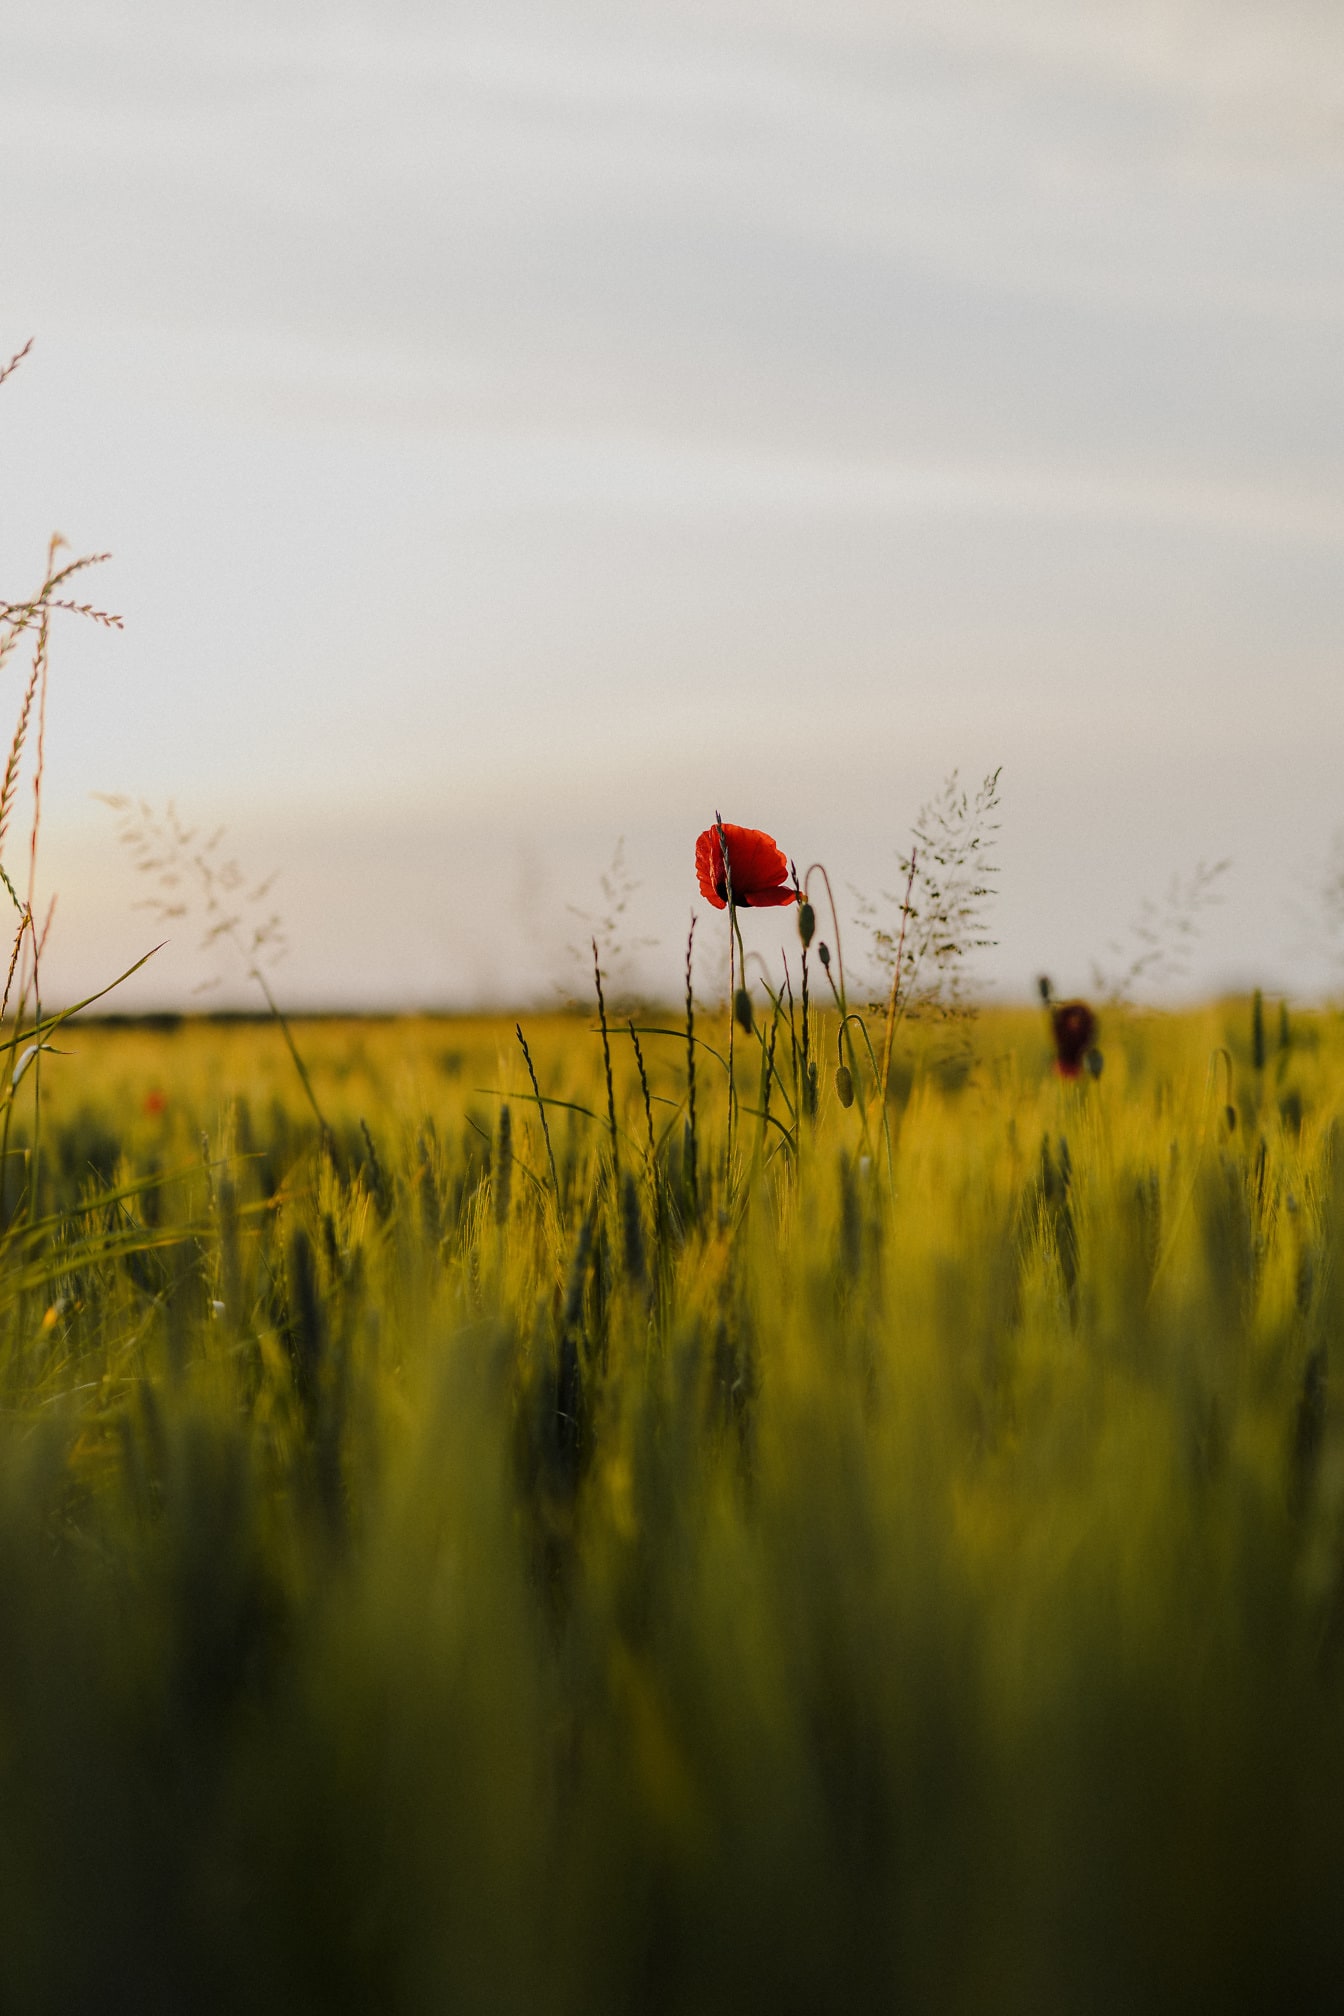 Yeşil sarı buğday tarlasında koyu kırmızı afyon haşhaş çiçeği